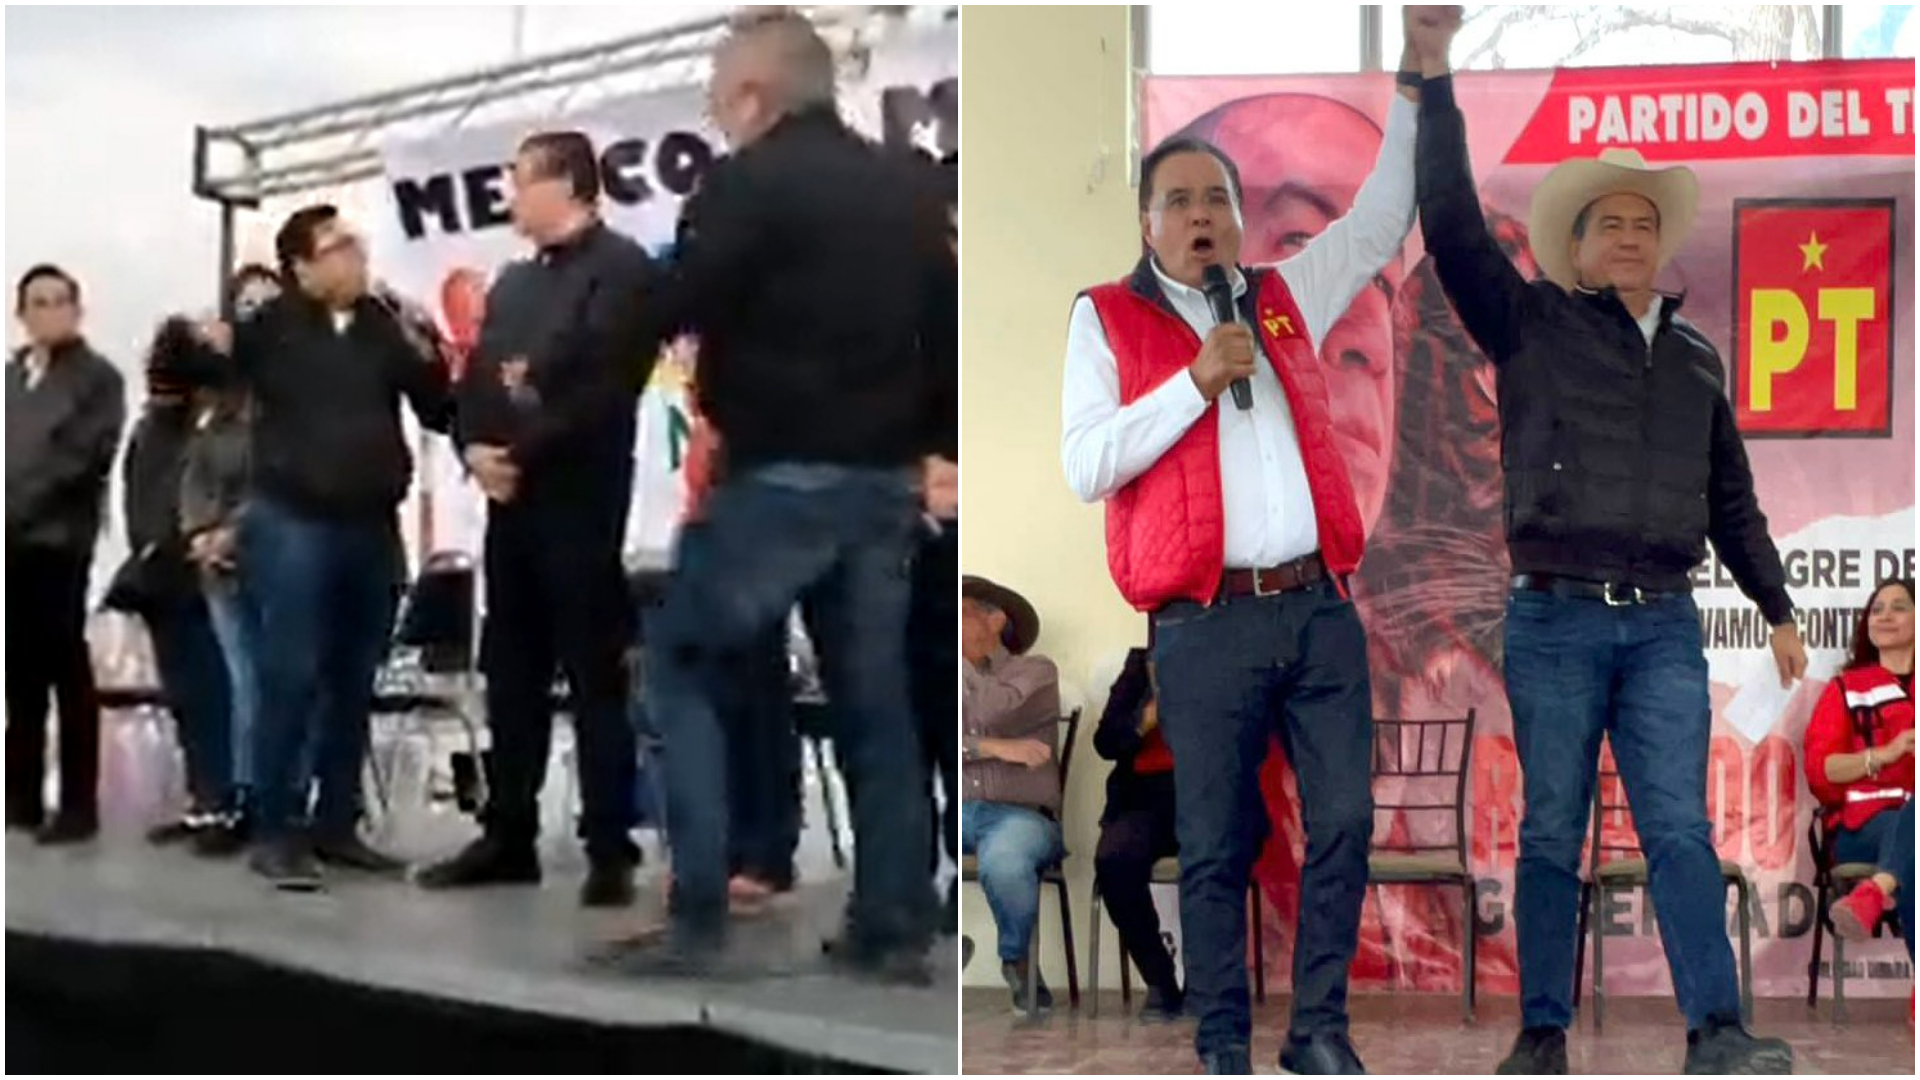 En Coahuila los distintos candidatos han estado distintas disputas en eventos (Twitter/@RicardoMeb)